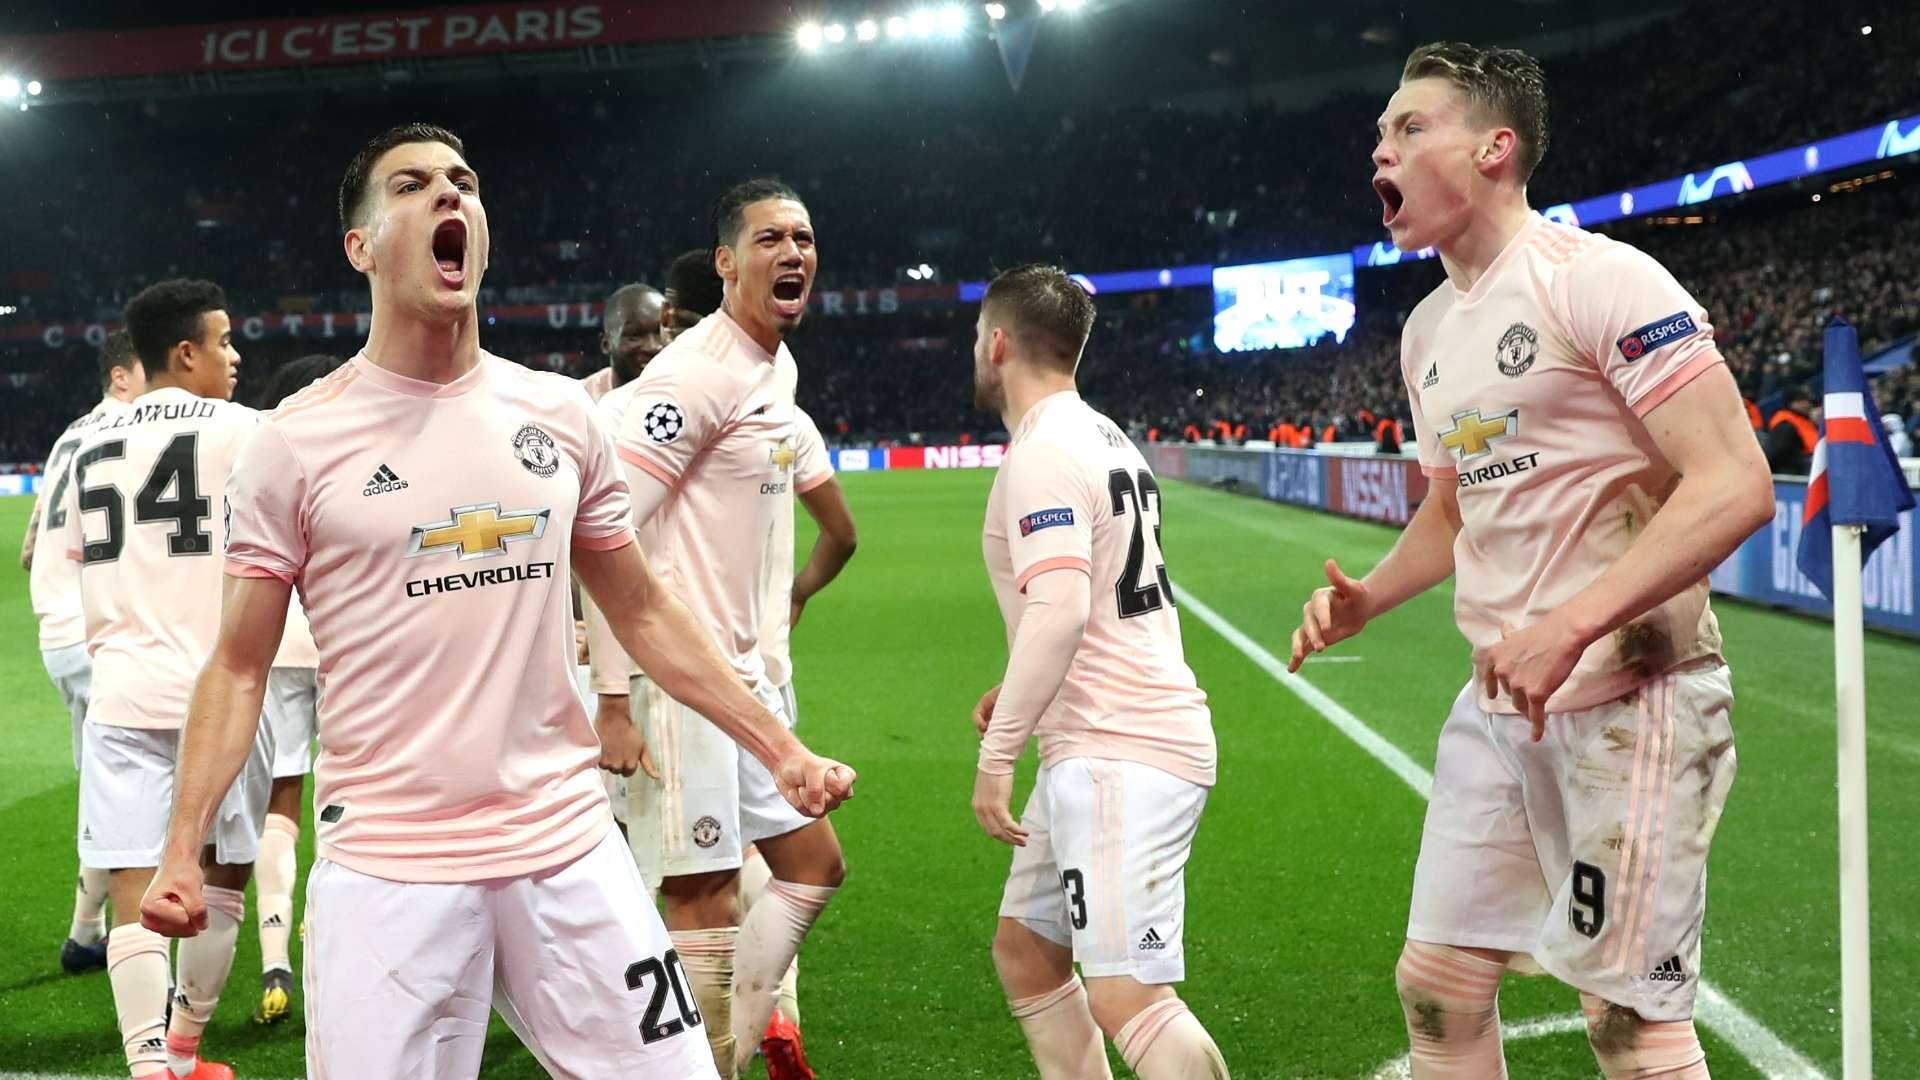 Man Utd celebrate vs PSG, Champions League 2018-19